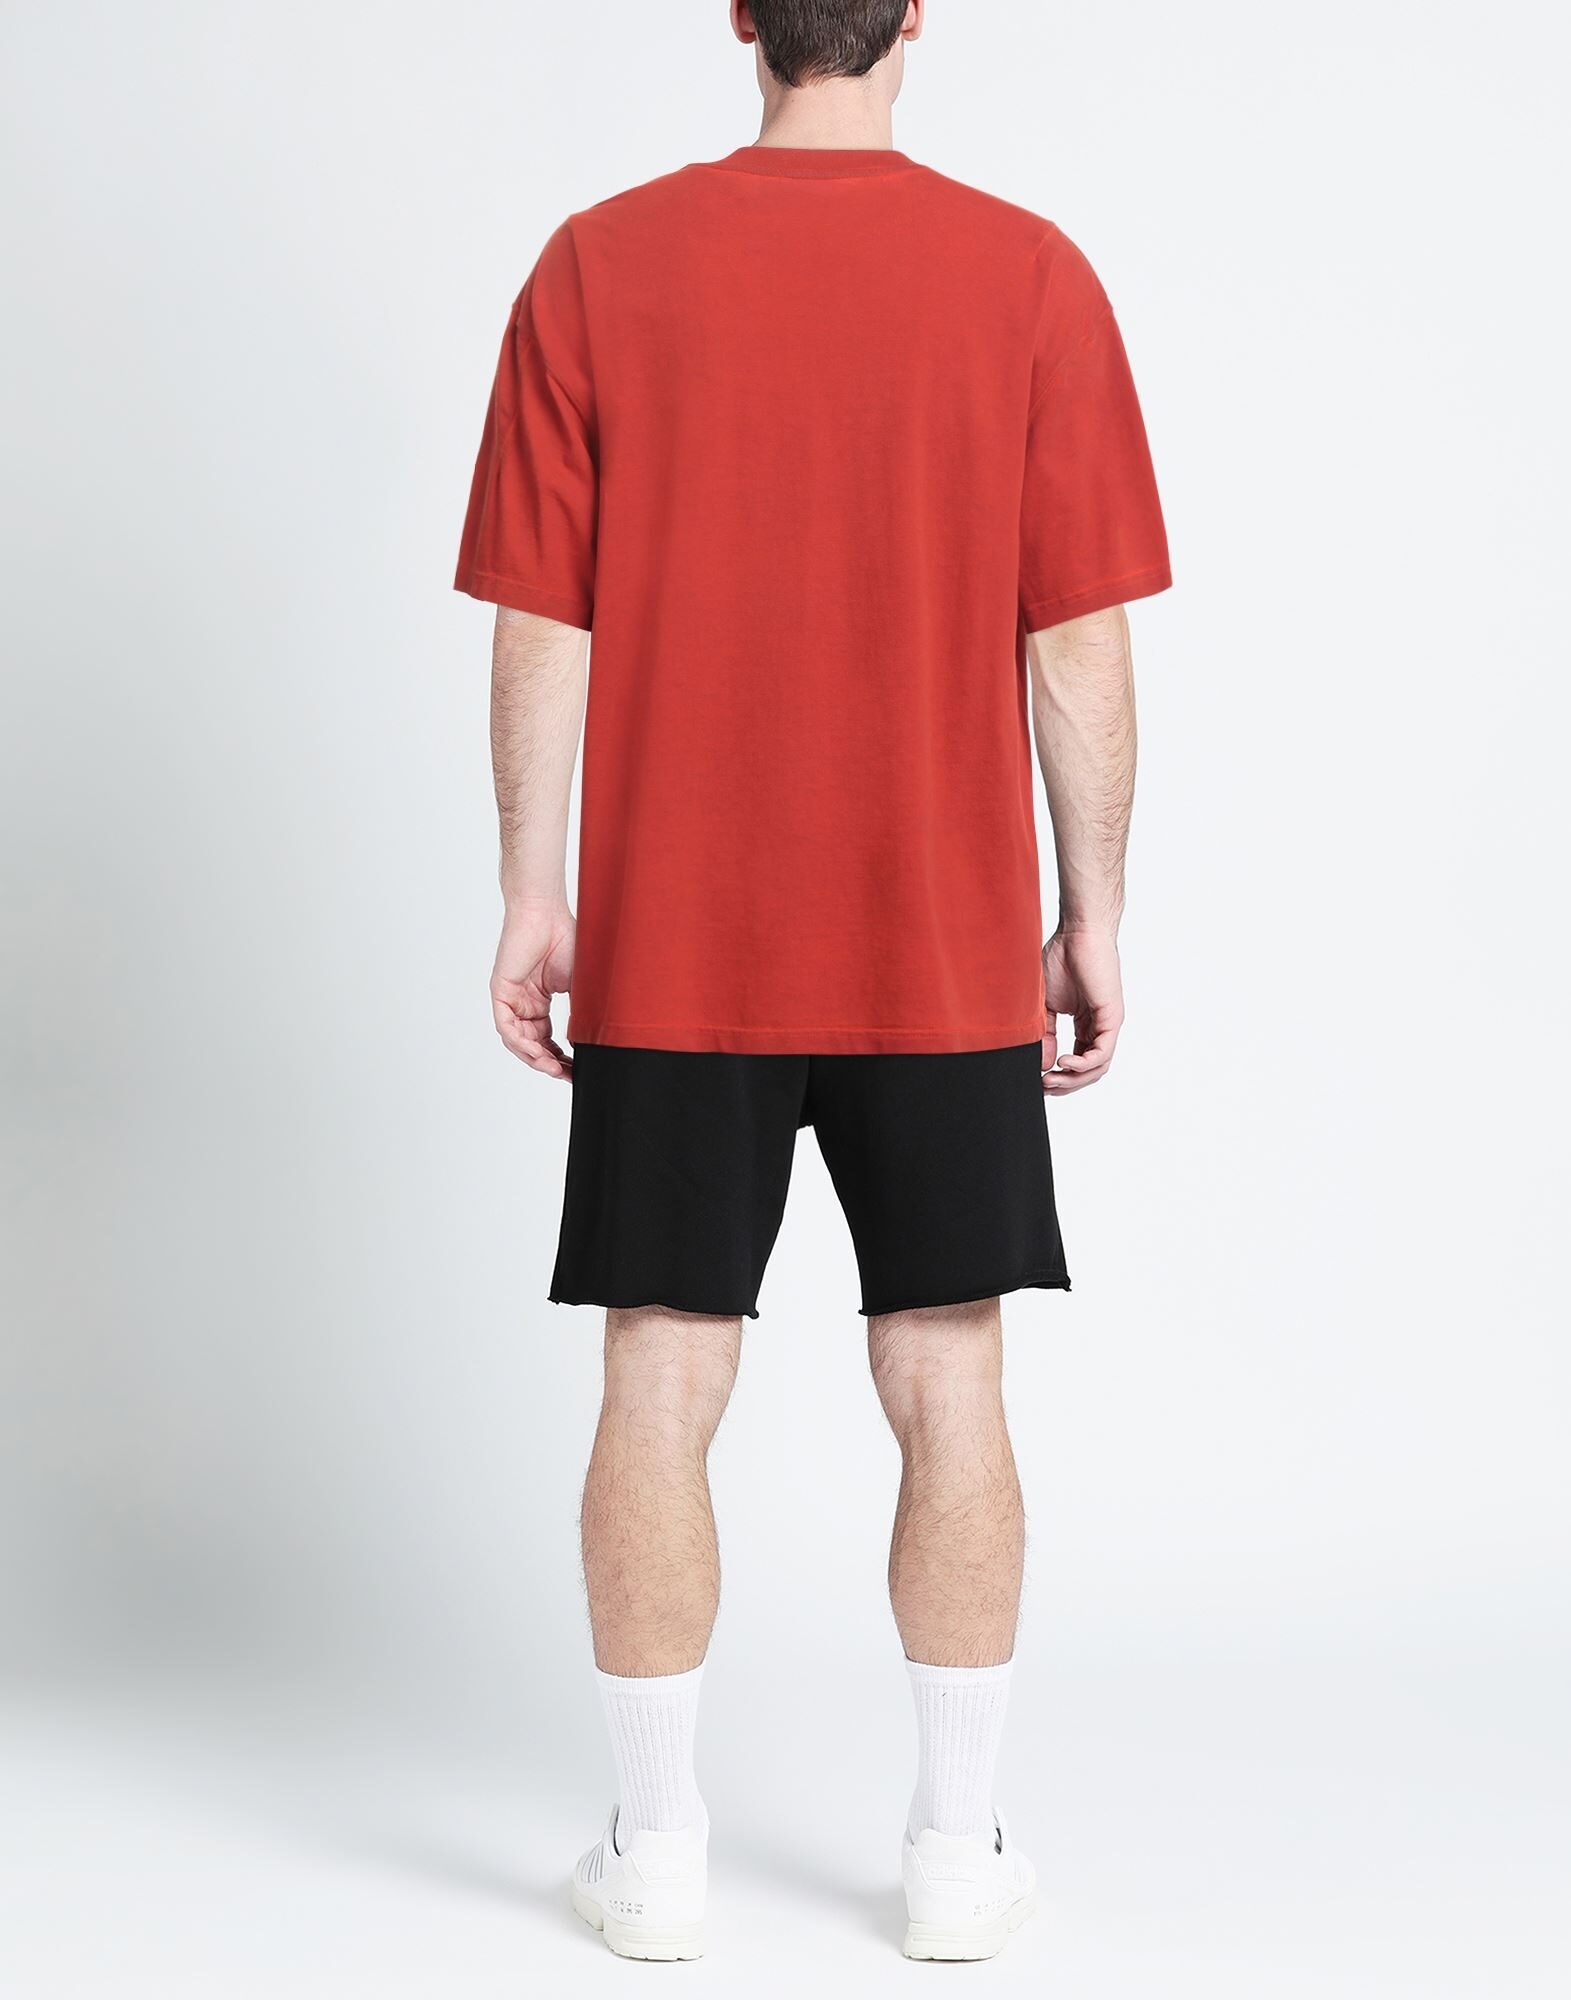 Red Men's Basic T-shirt - 3